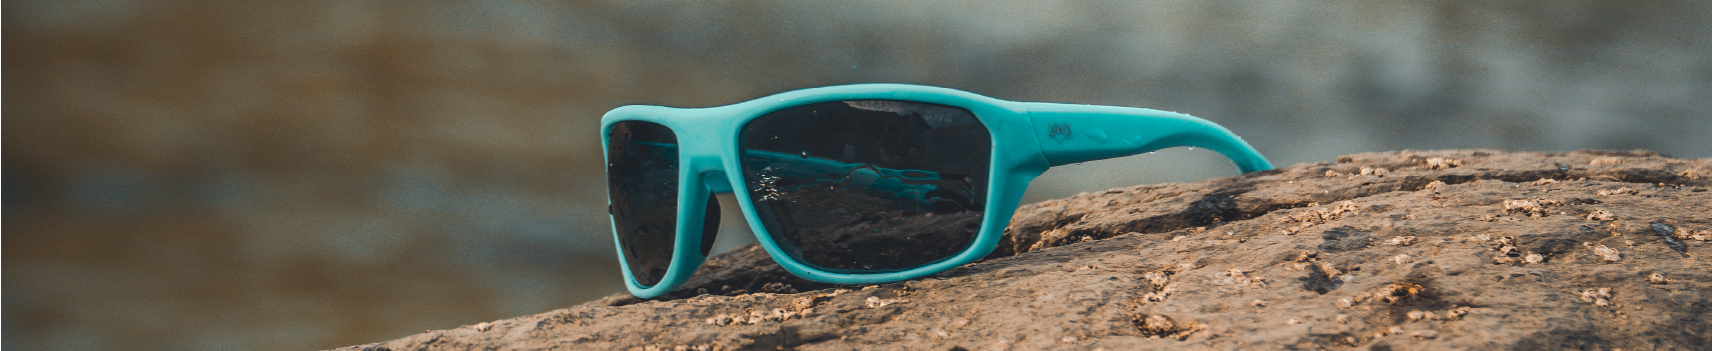 Óculos de Sol Flutuantes | Urboow Fashionable Eyewear